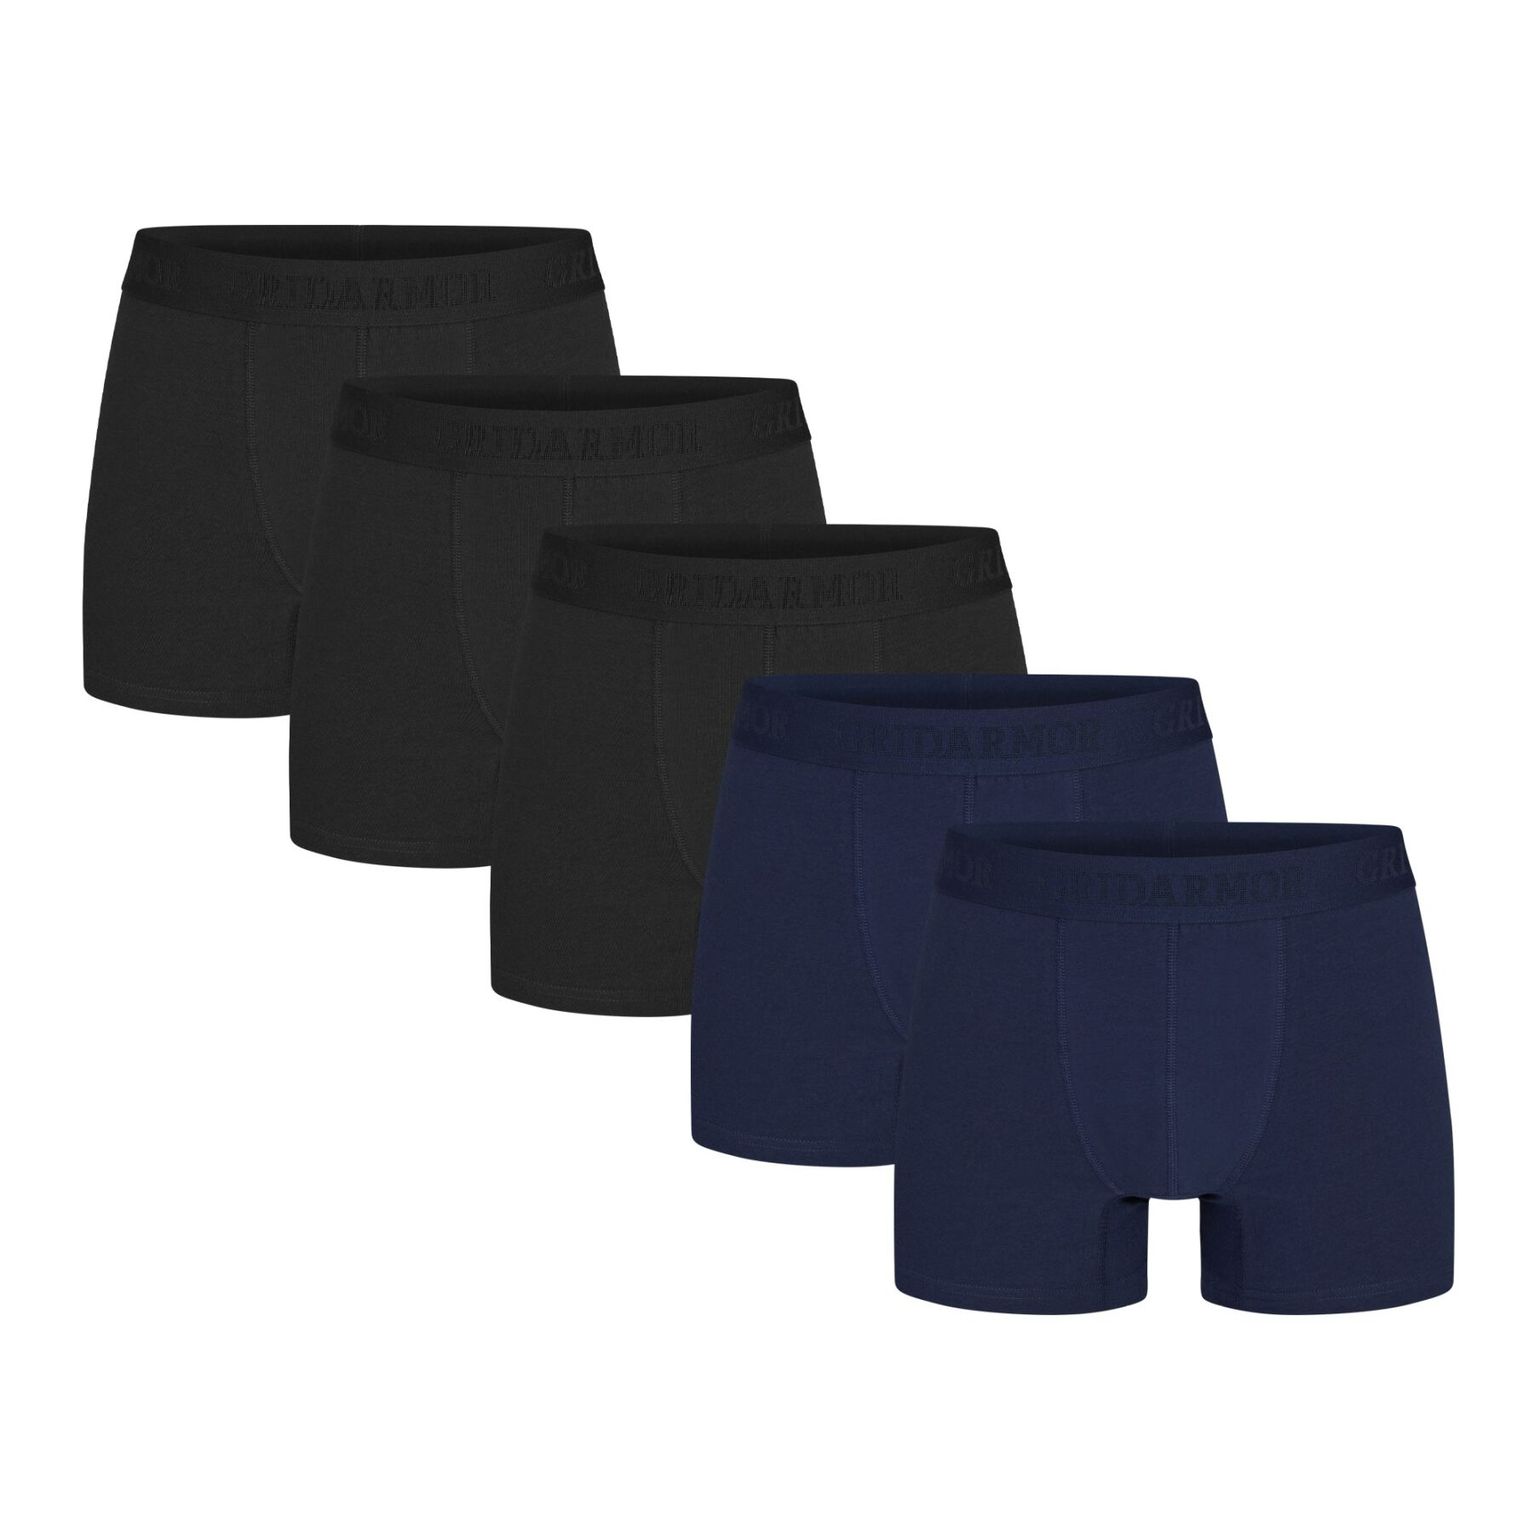 Gridarmor Men's Steine 5p Cotton Boxers 2.0 Black/Blue